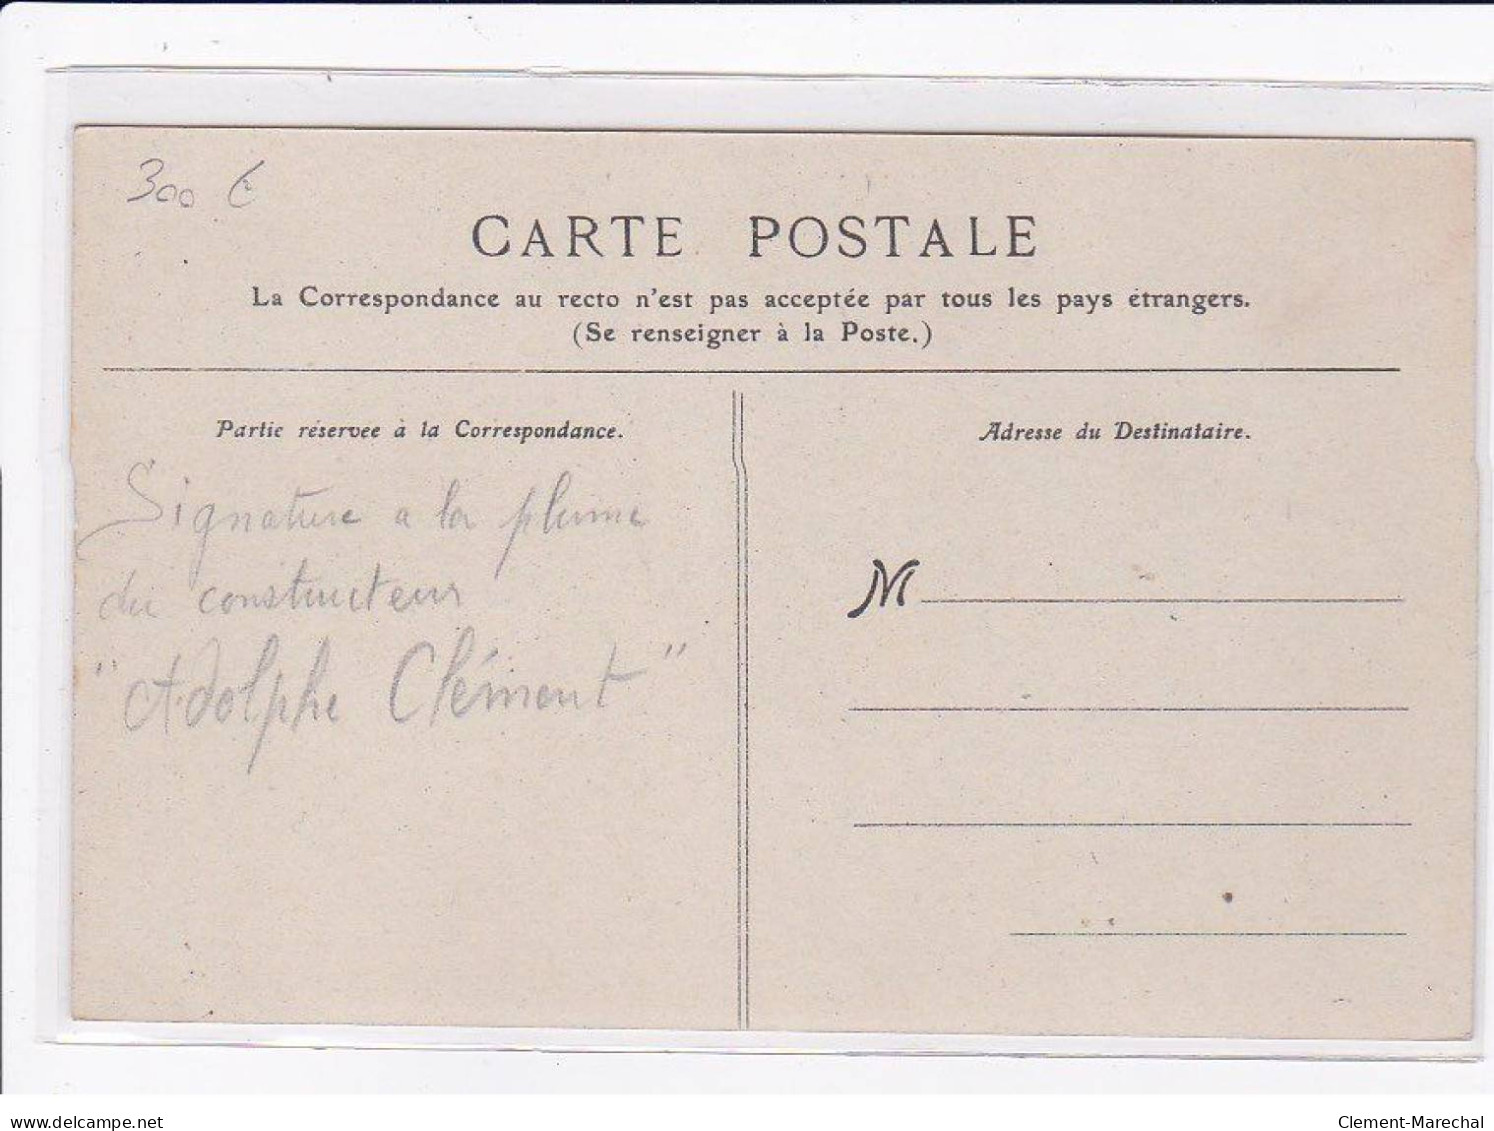 AVIATION : BALLON - Autographe D' Adolphe CLEMENT (constructeur CLEMENT-BAYARD) Raide Paris Compiegne- Bon état - Luchtschepen